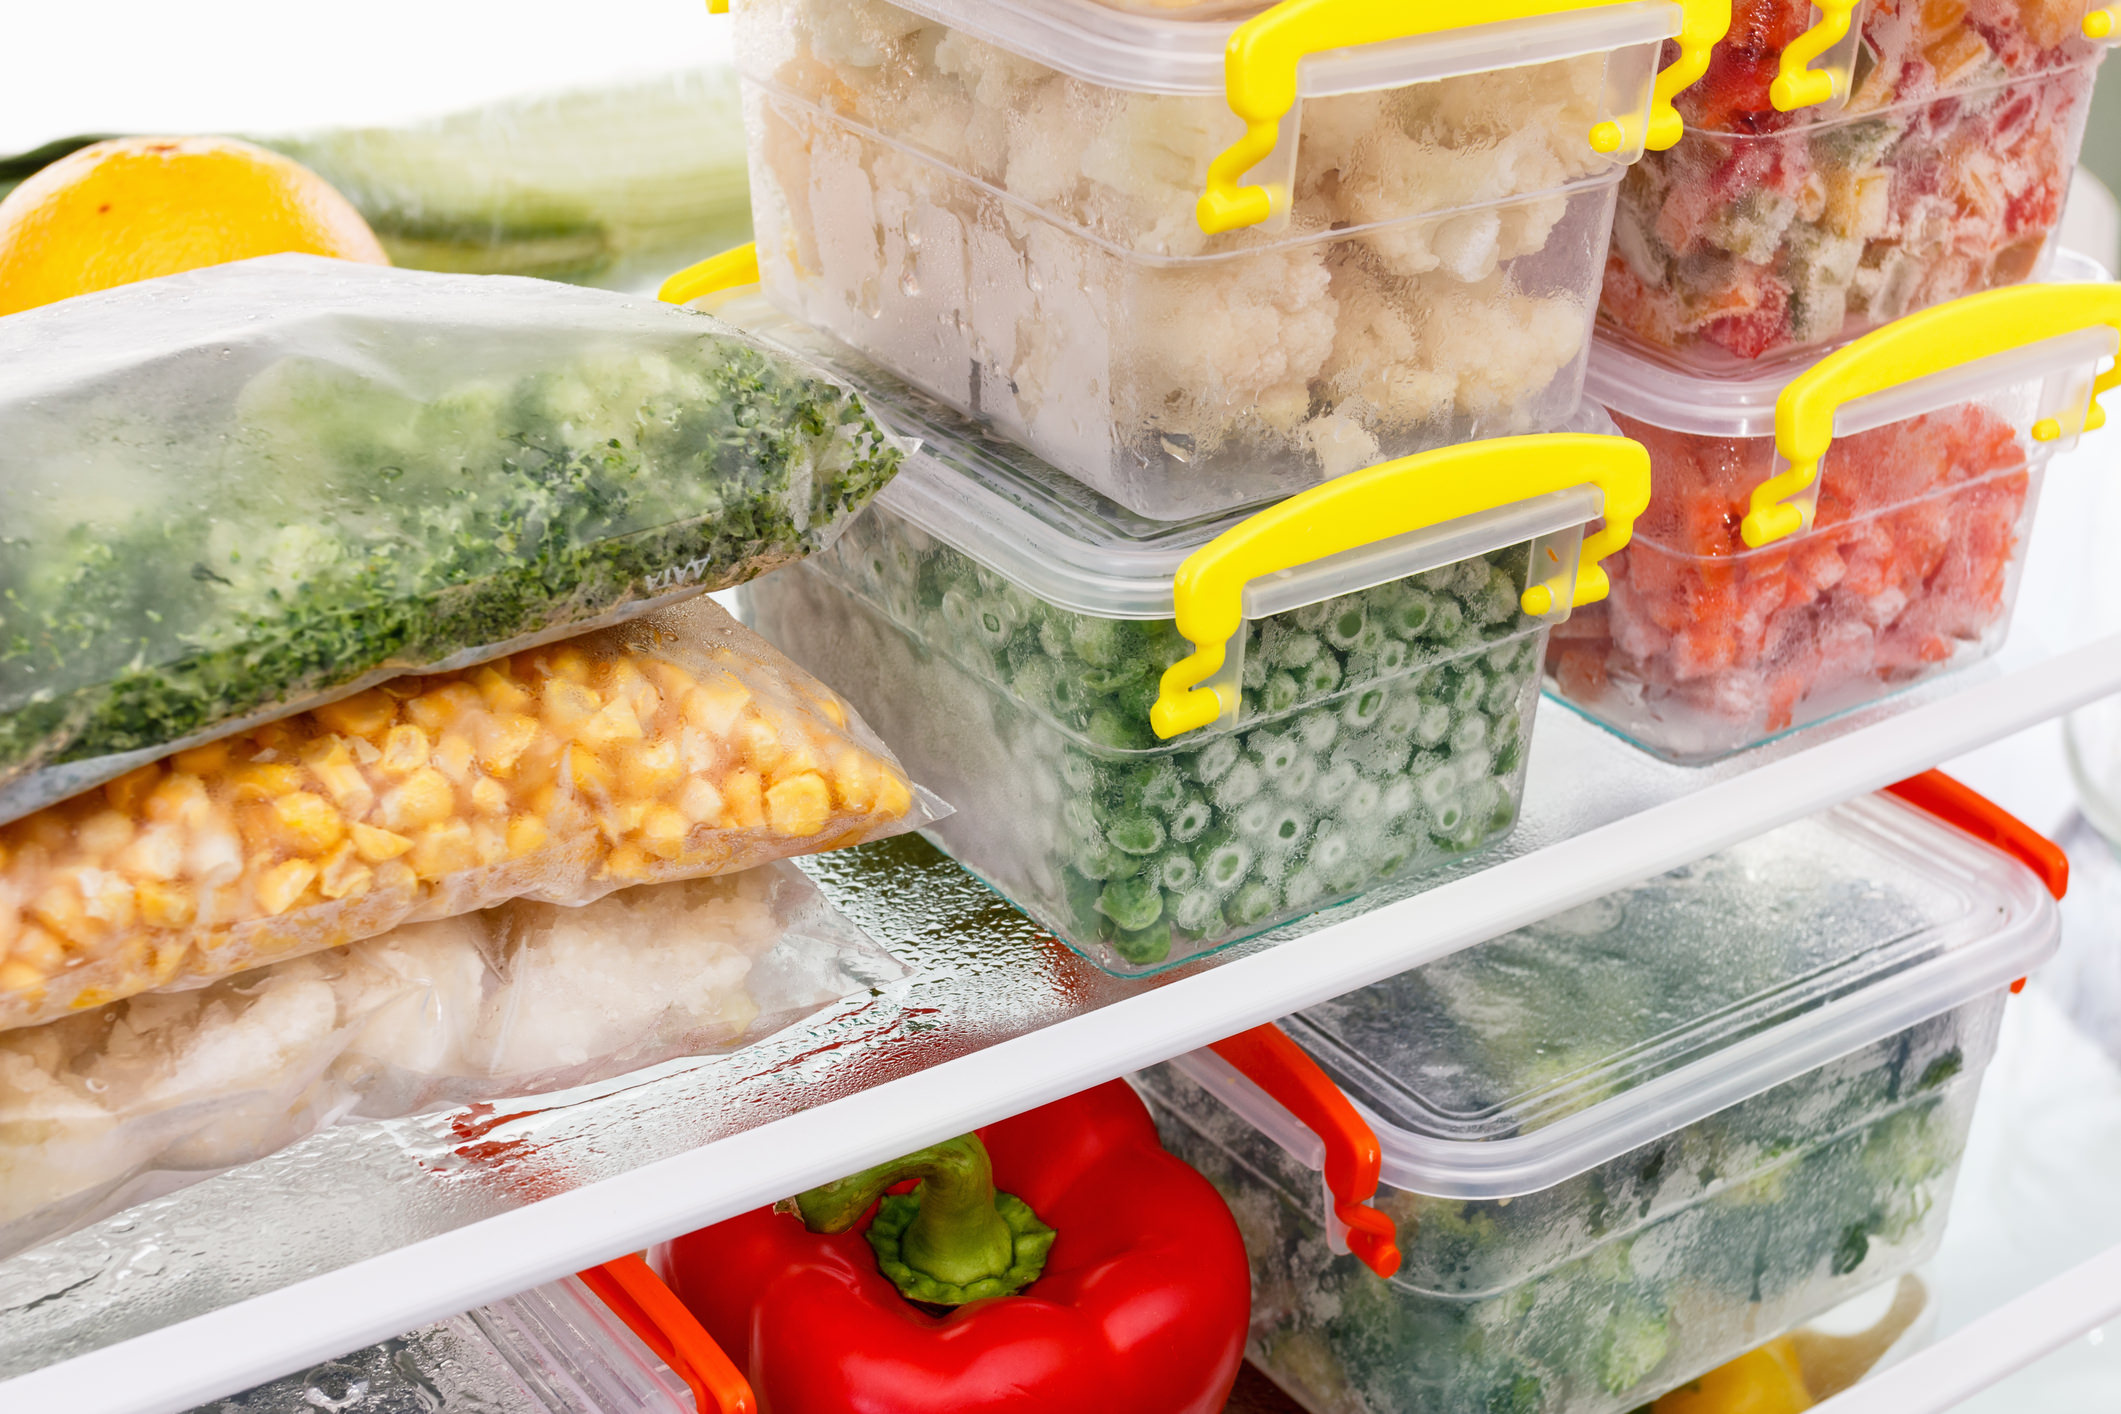 อาหารแต่ละชนิด เก็บไว้ในตู้เย็นได้นานแค่ไหน จึงจะไม่เสีย | HD สุขภาพดี เริ่มต้นที่นี่